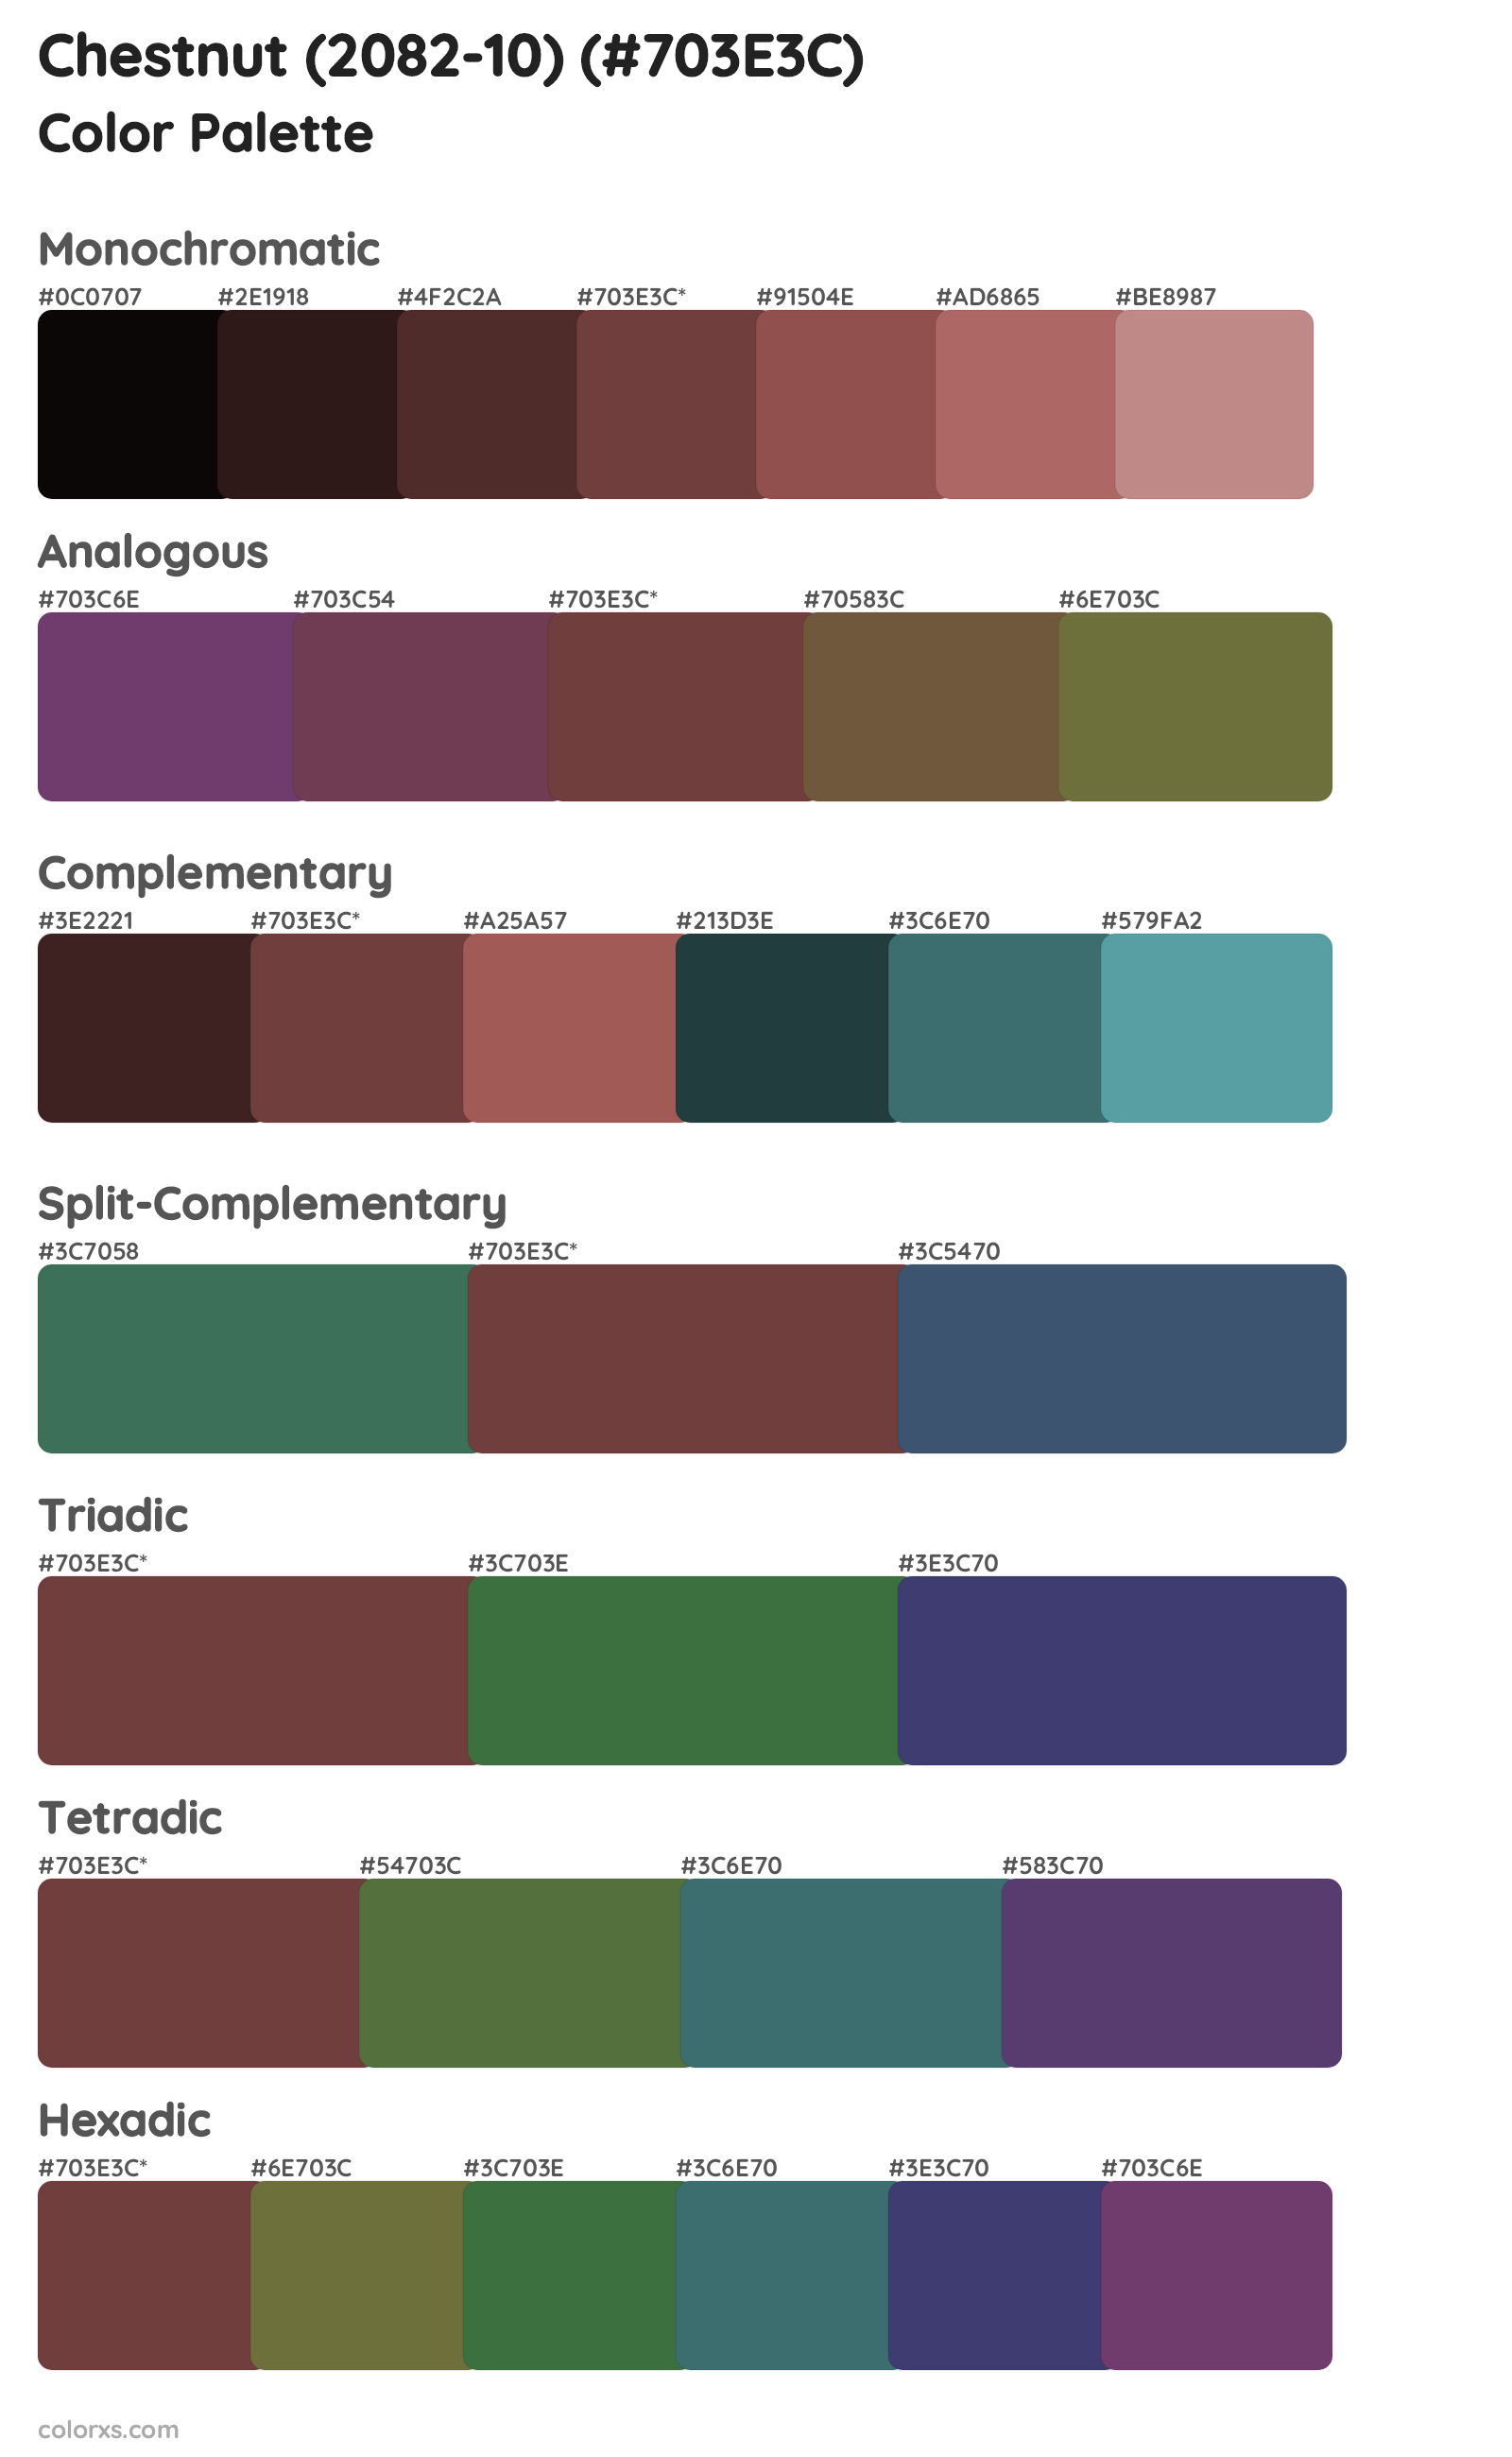 Chestnut (2082-10) Color Scheme Palettes